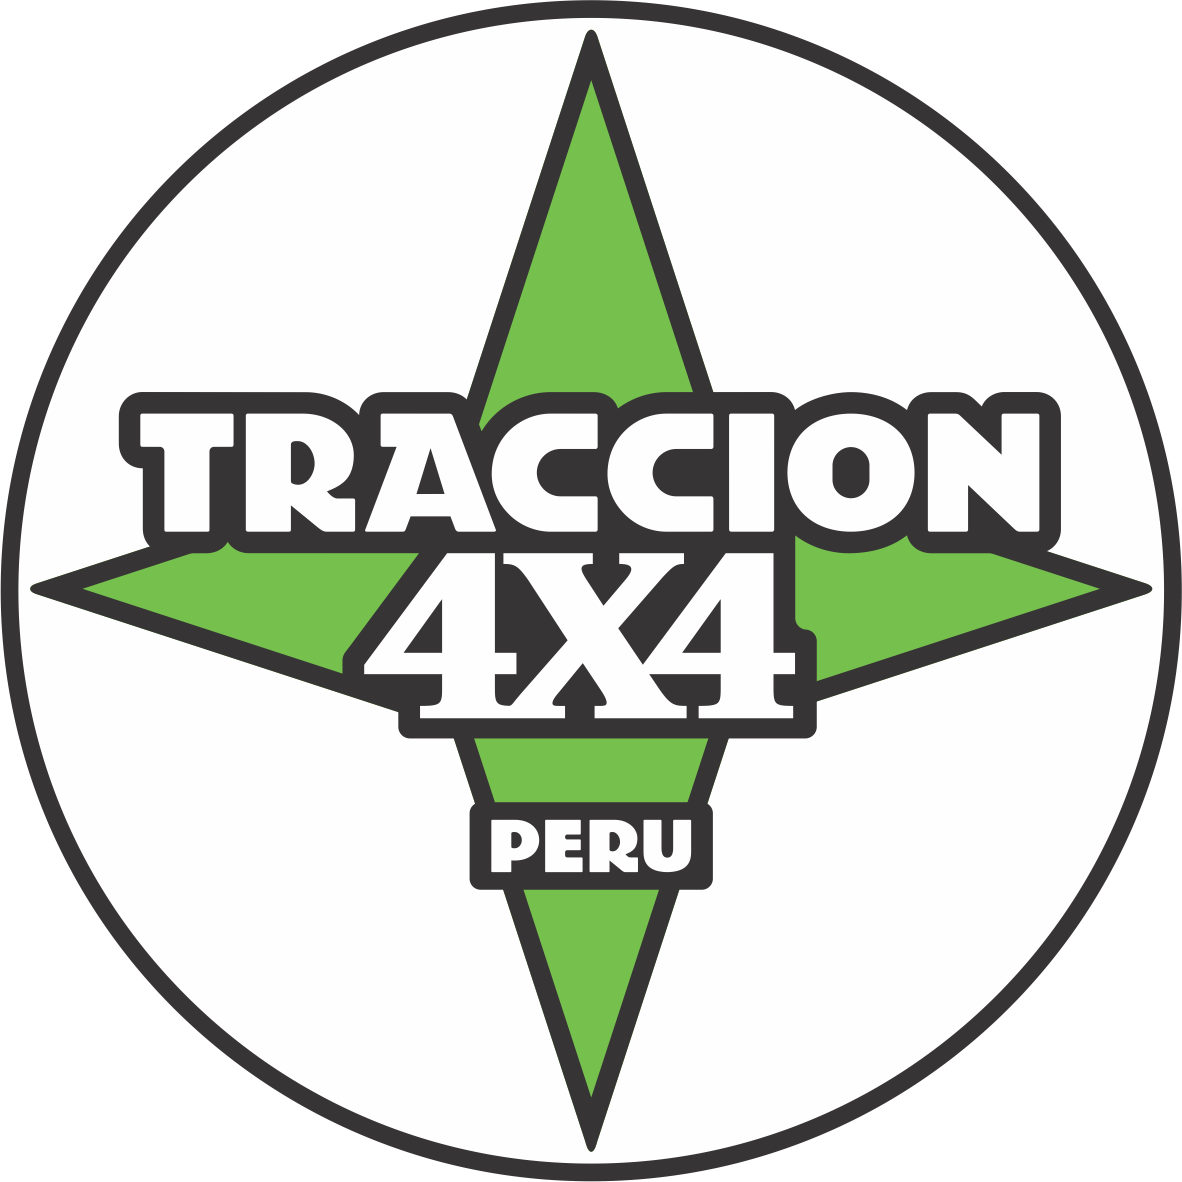 Tracción 4x4 Perú®